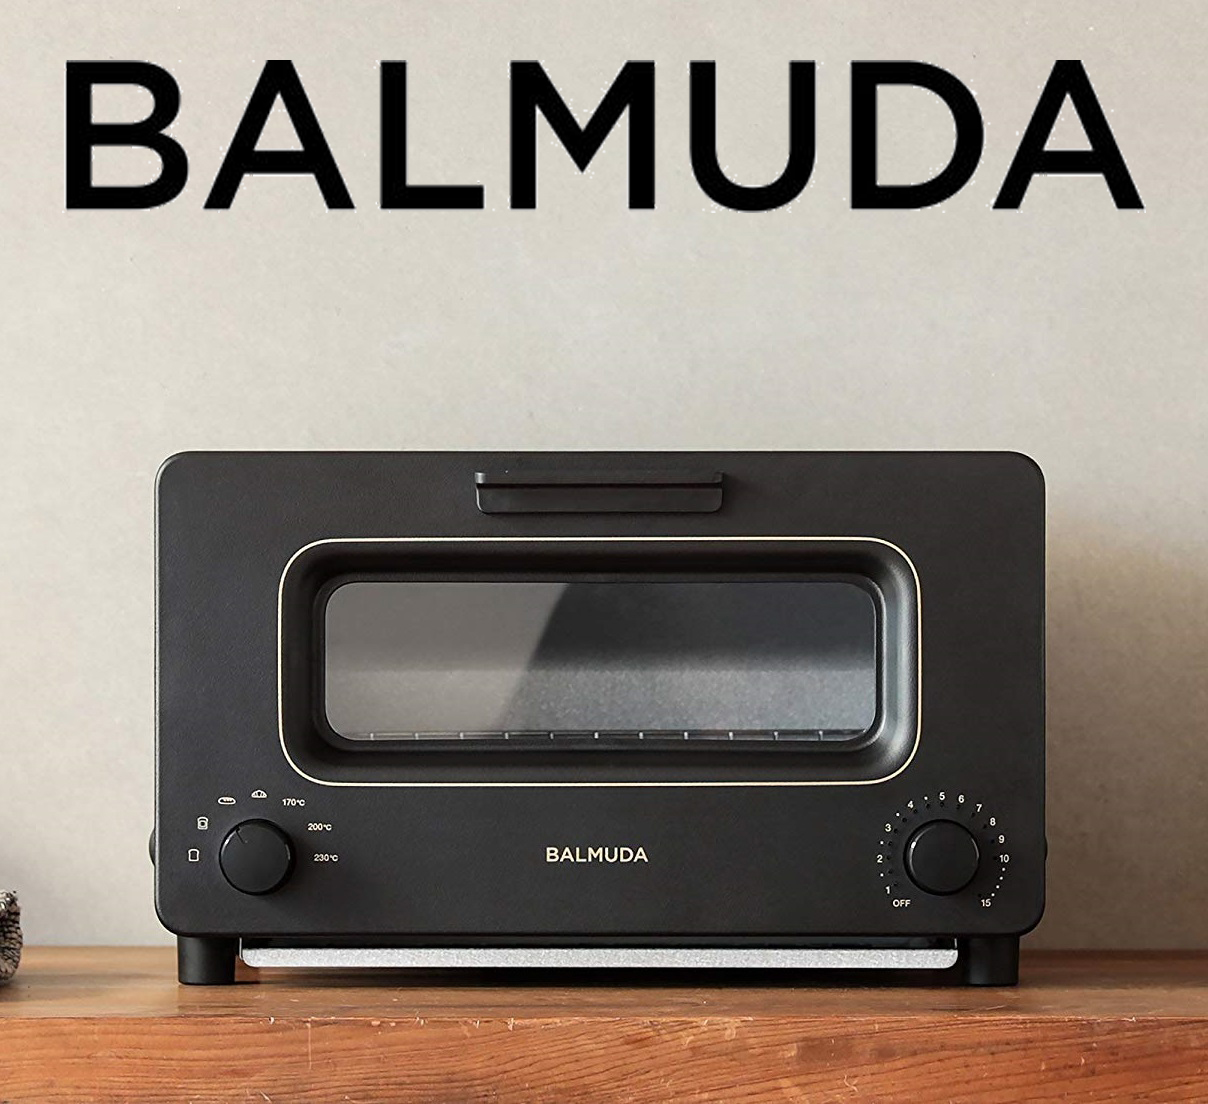  【BALMUDA】スチームオーブントースター